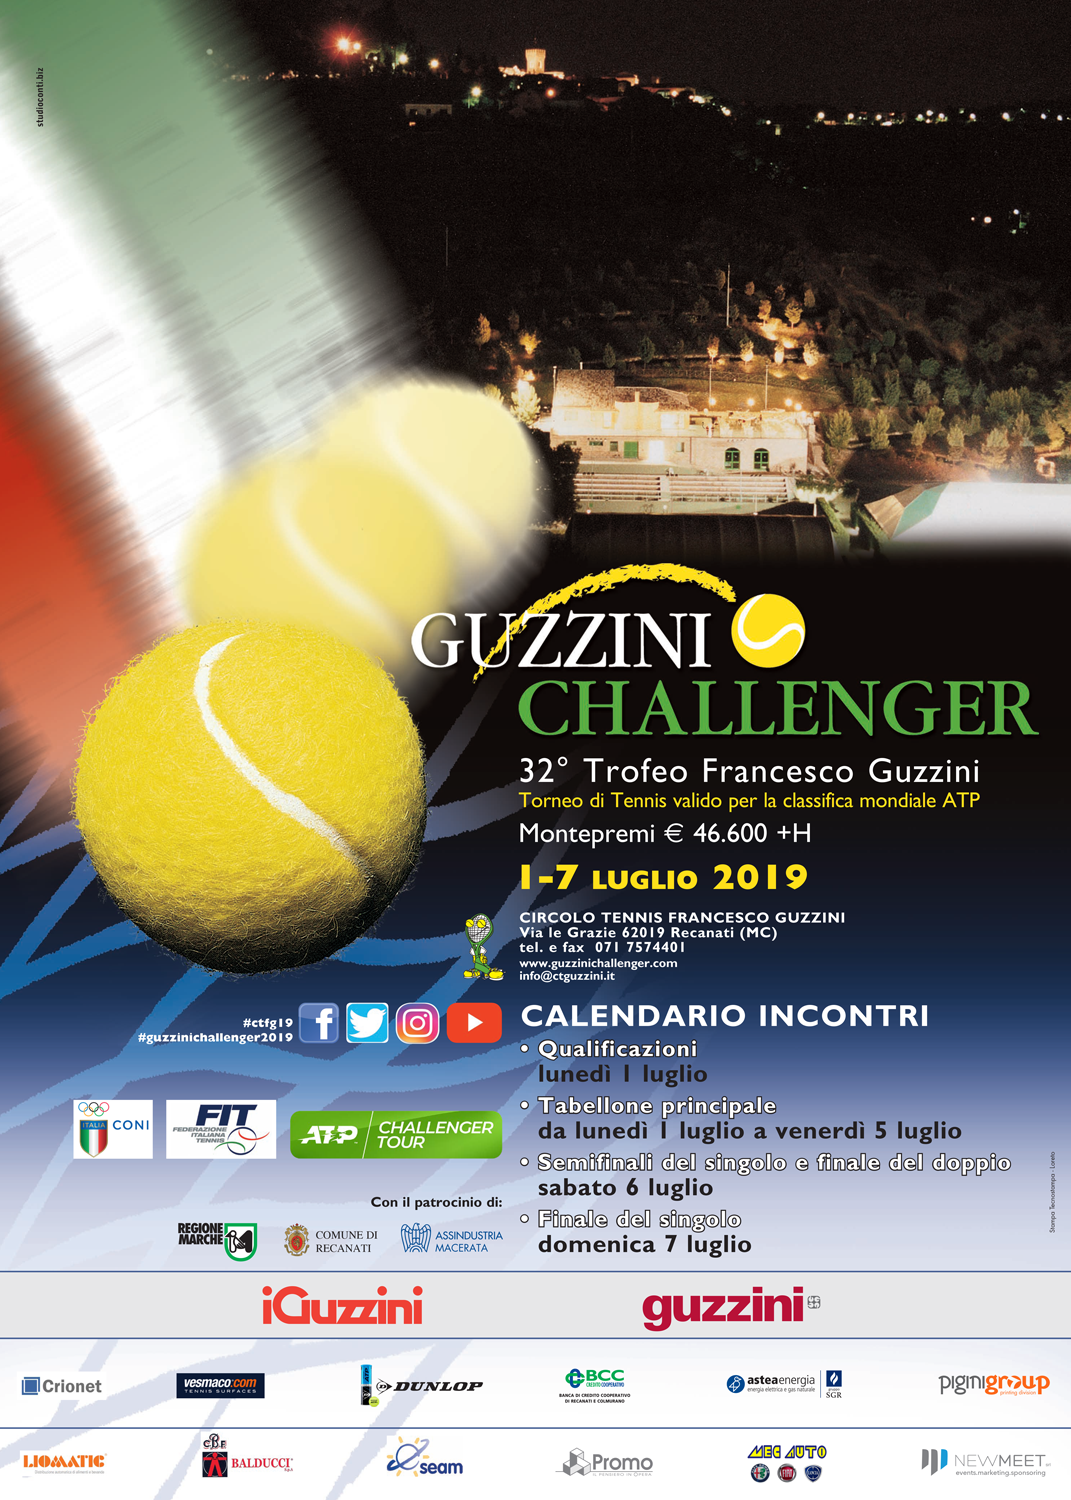 Il grande tennis internazionale torna a Recanati per il 32° trofeo Francesco Guzzini